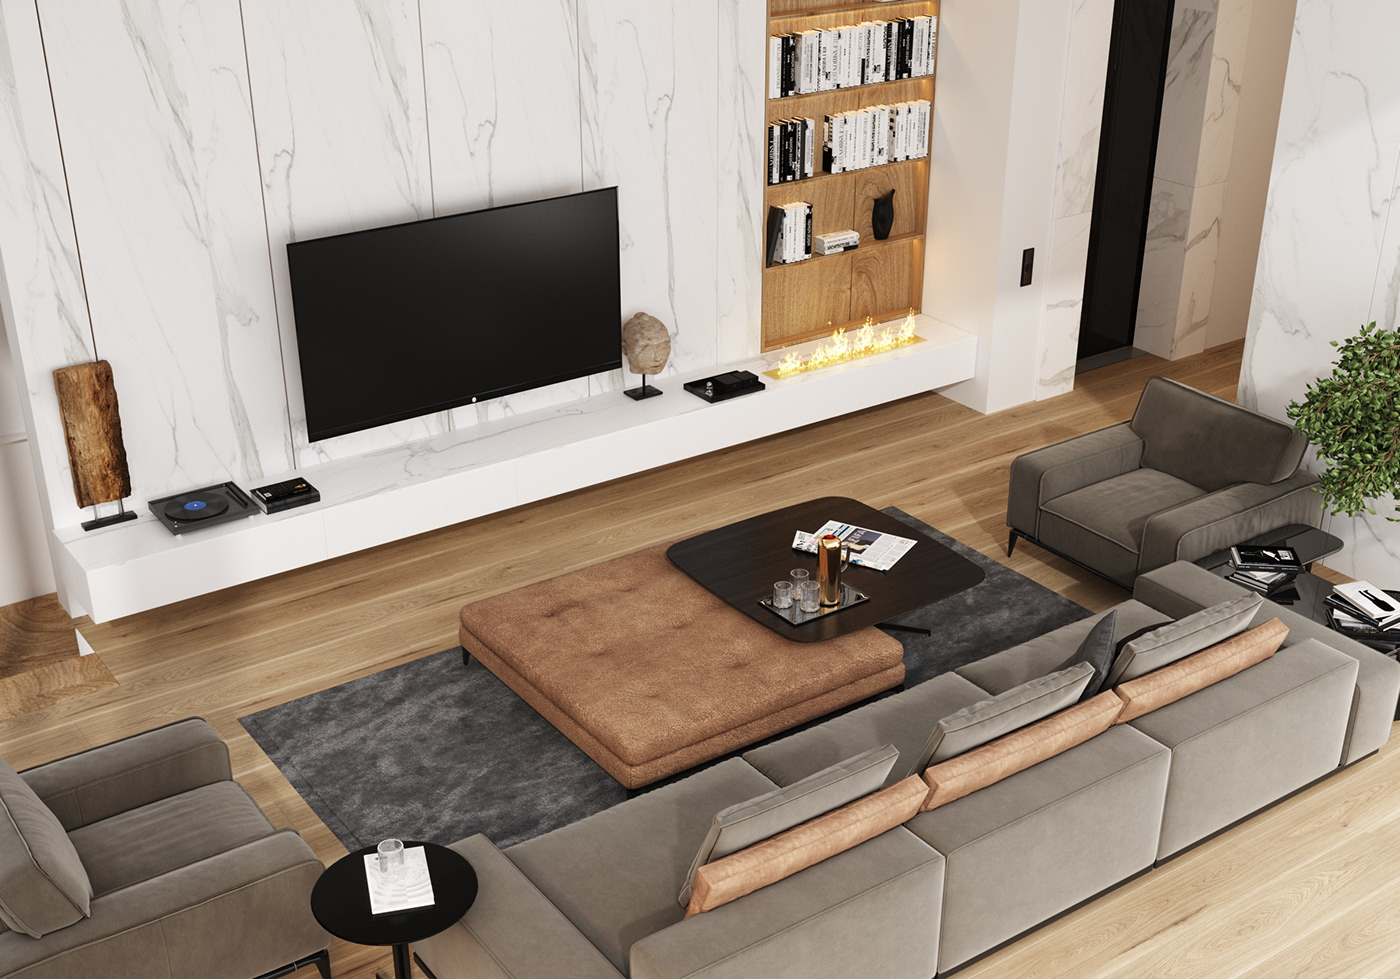 3D architecture bedroom design desing Interior interior design  modern open kitchen Render visualization